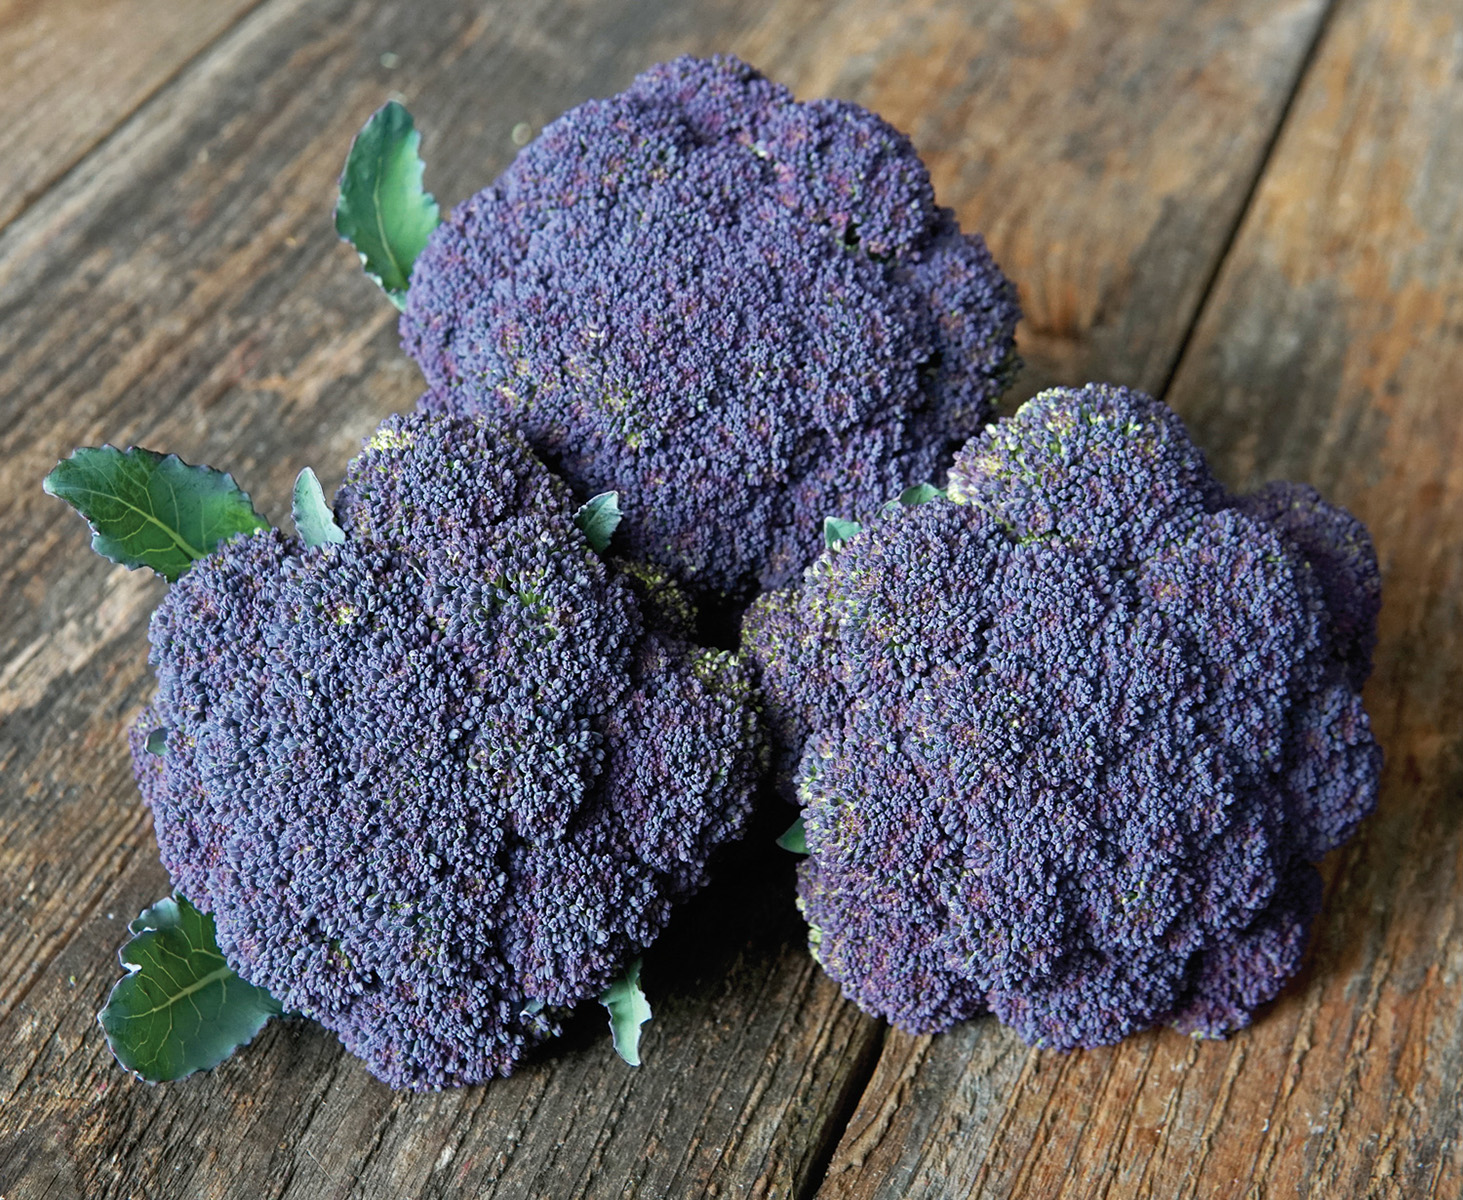 Picture of Jacaranda purple-headed broccoli